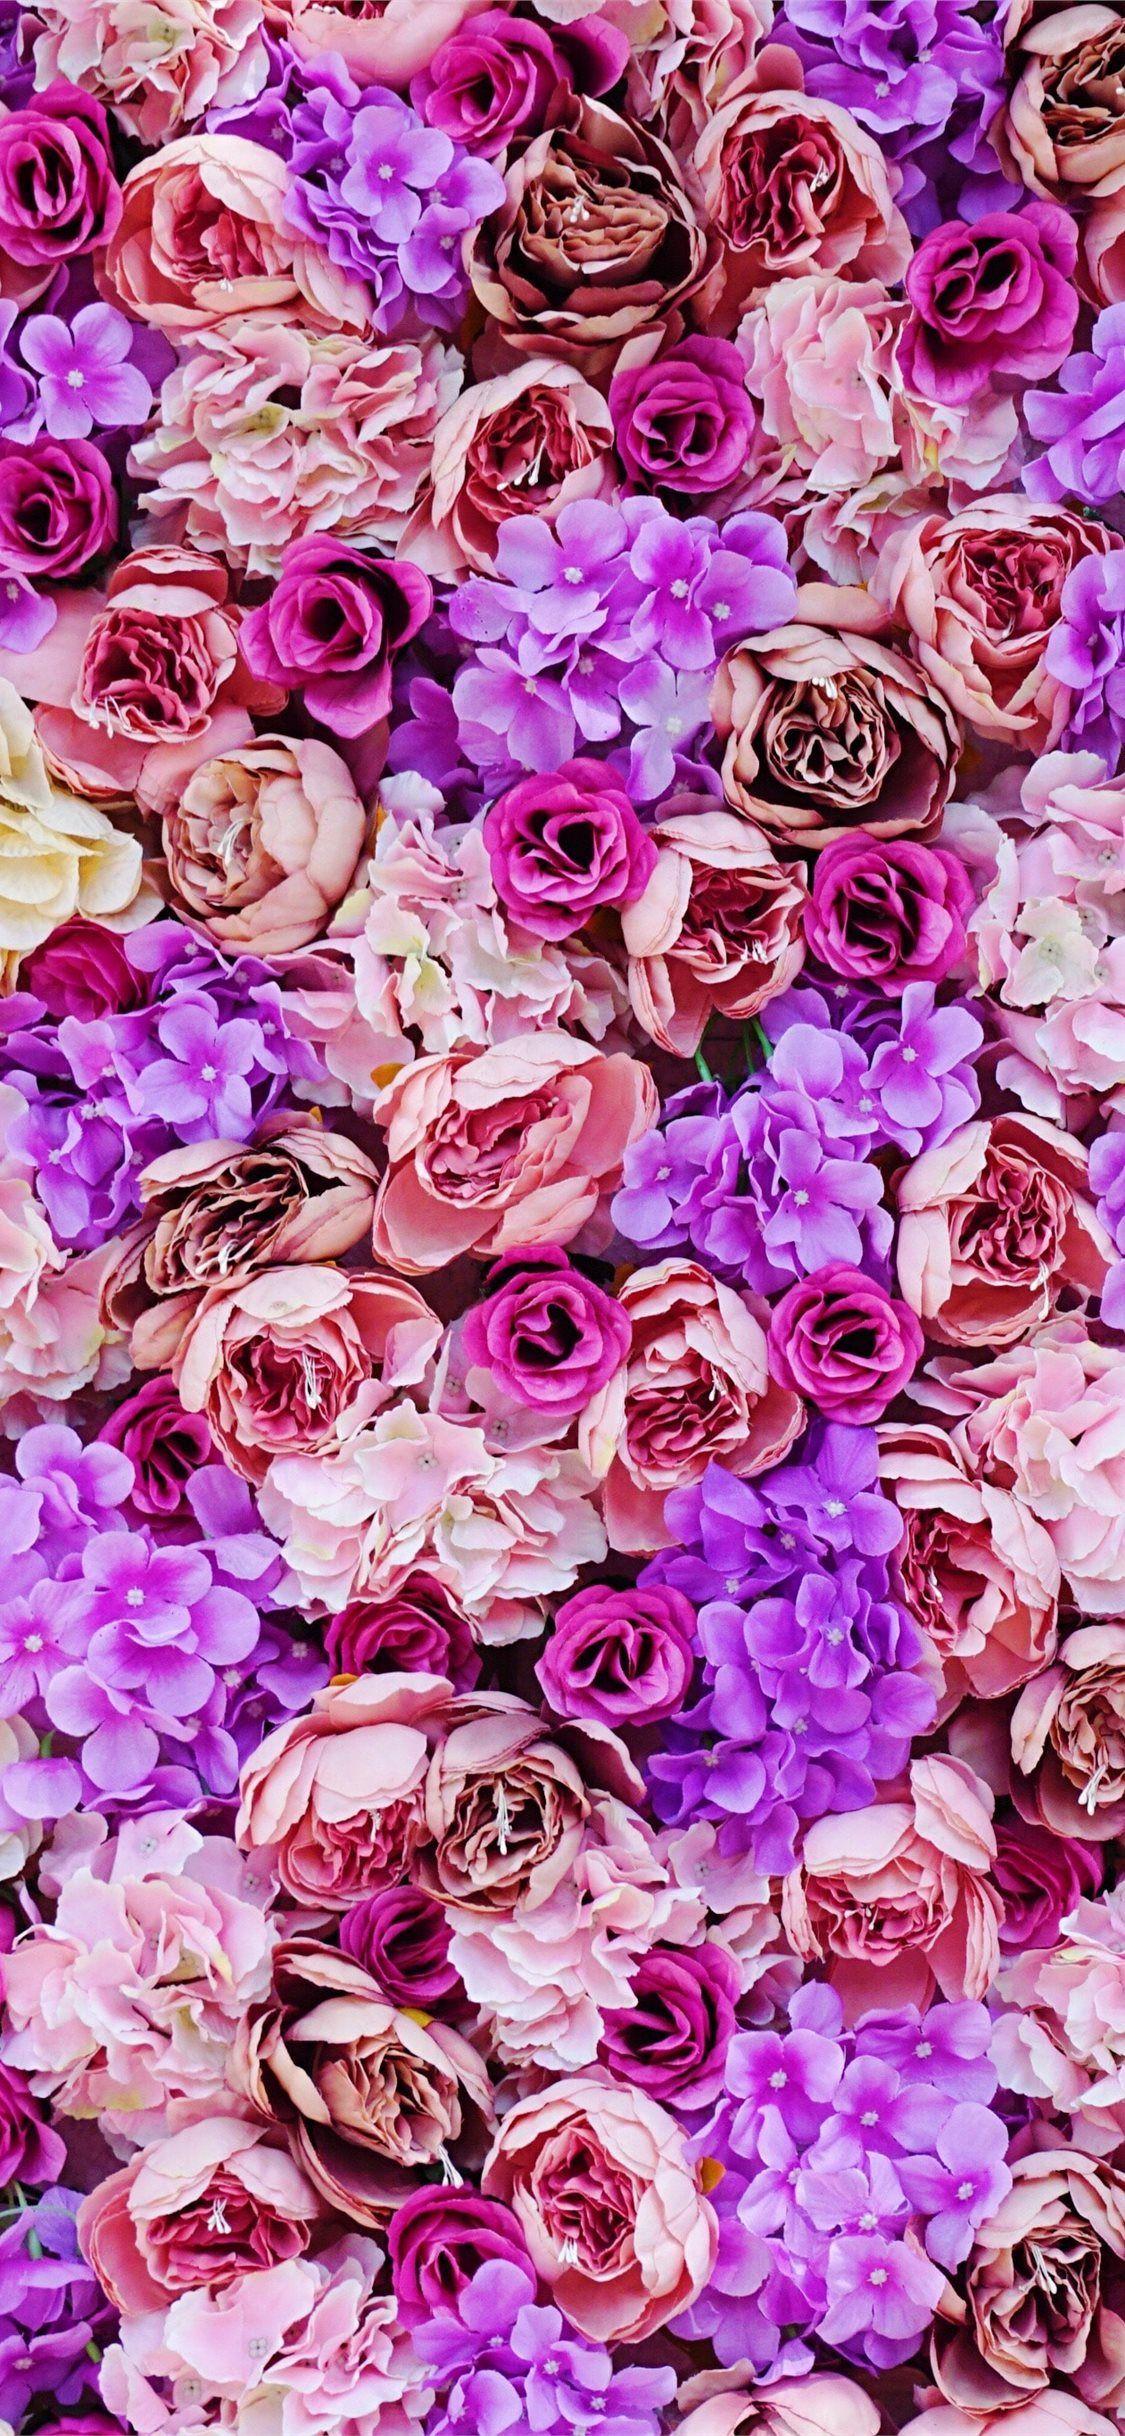 Hình nền hoa hồng tím: Bạn thích hoa hồng tím và muốn tìm một hình nền đẹp để làm nền cho điện thoại hoặc máy tính của mình? Hãy xem qua bộ sưu tập này! Với sắc hồng tím nhẹ nhàng, chúng làm cho màn hình trở nên đầy sức sống và biểu thị cho sự tươi mới của ngày mới.